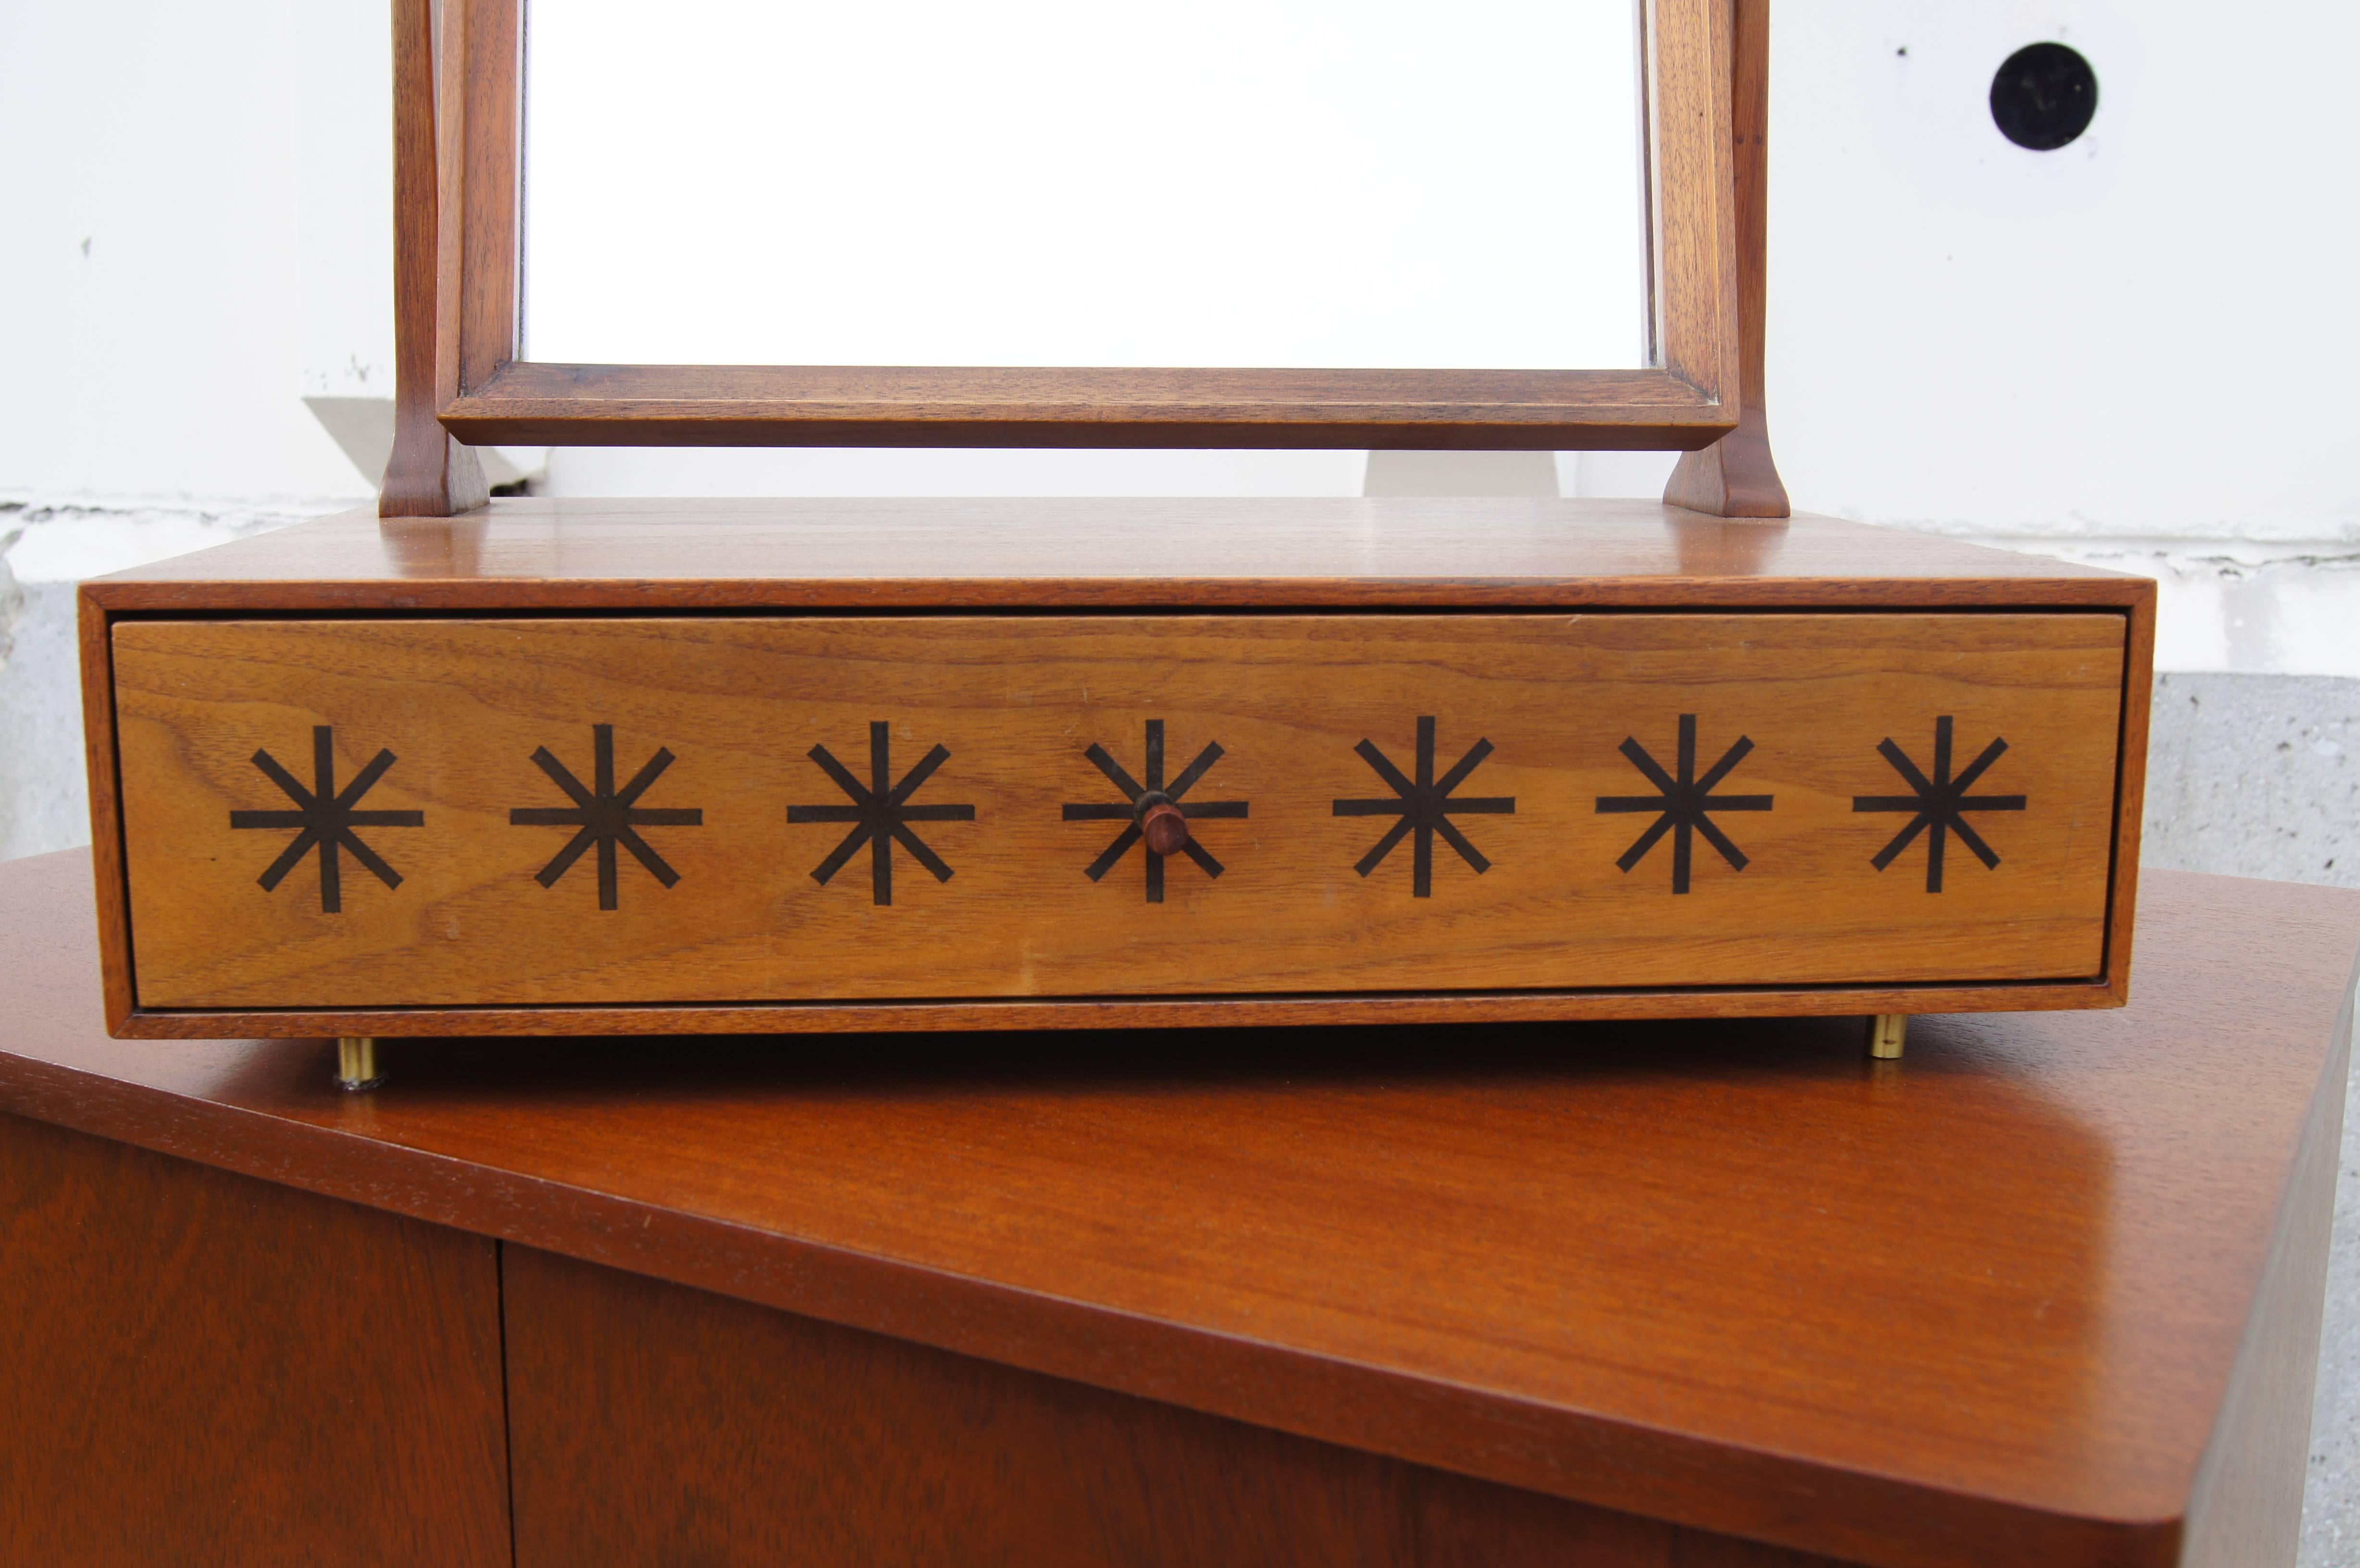 Kipp Stewart entwarf diesen seltenen Tischwaschtisch für die Directional-Linie von Calvin Furniture. Ein schwenkbarer Spiegel hängt in einem Rahmen aus Nussbaumholz über einer einzelnen Schublade, deren Vorderseite mit sieben fetten Sternchen